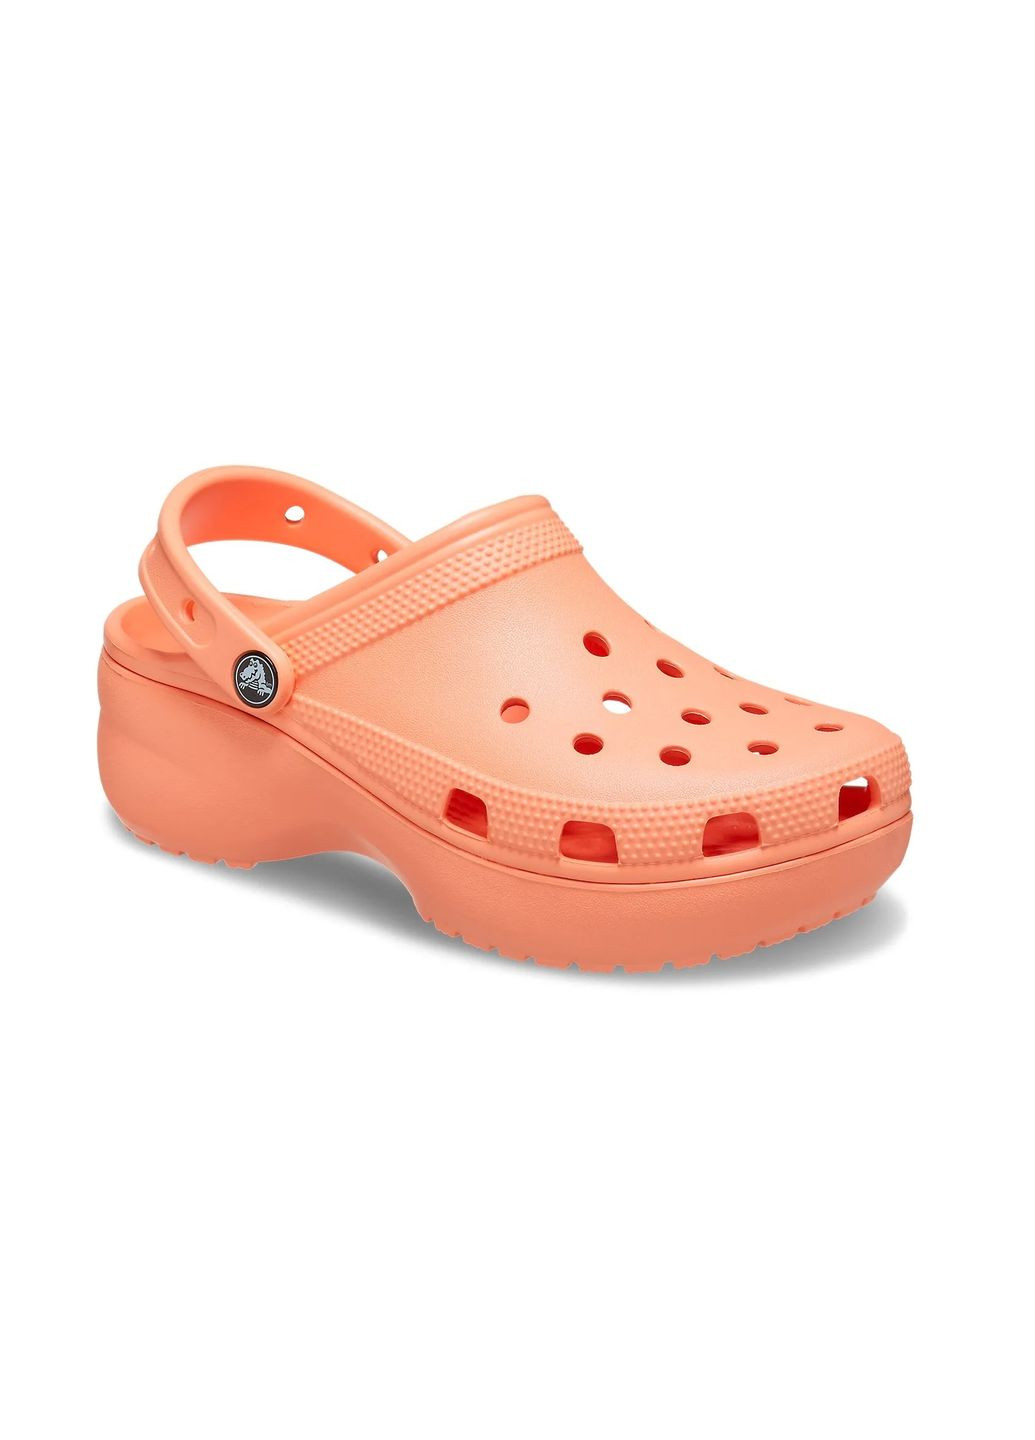 Оранжевые женские кроксы classic platform clog m4w6-36-23 см papaya 206750 Crocs